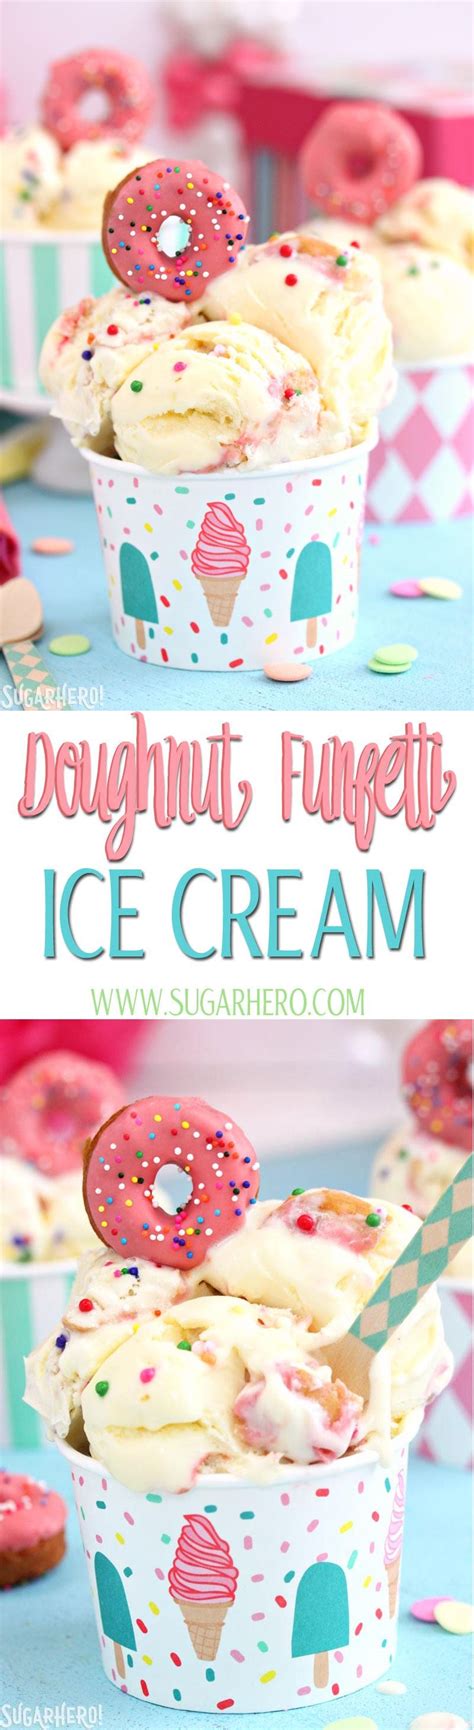 Doughnut Funfetti Ice Cream Sugarhero